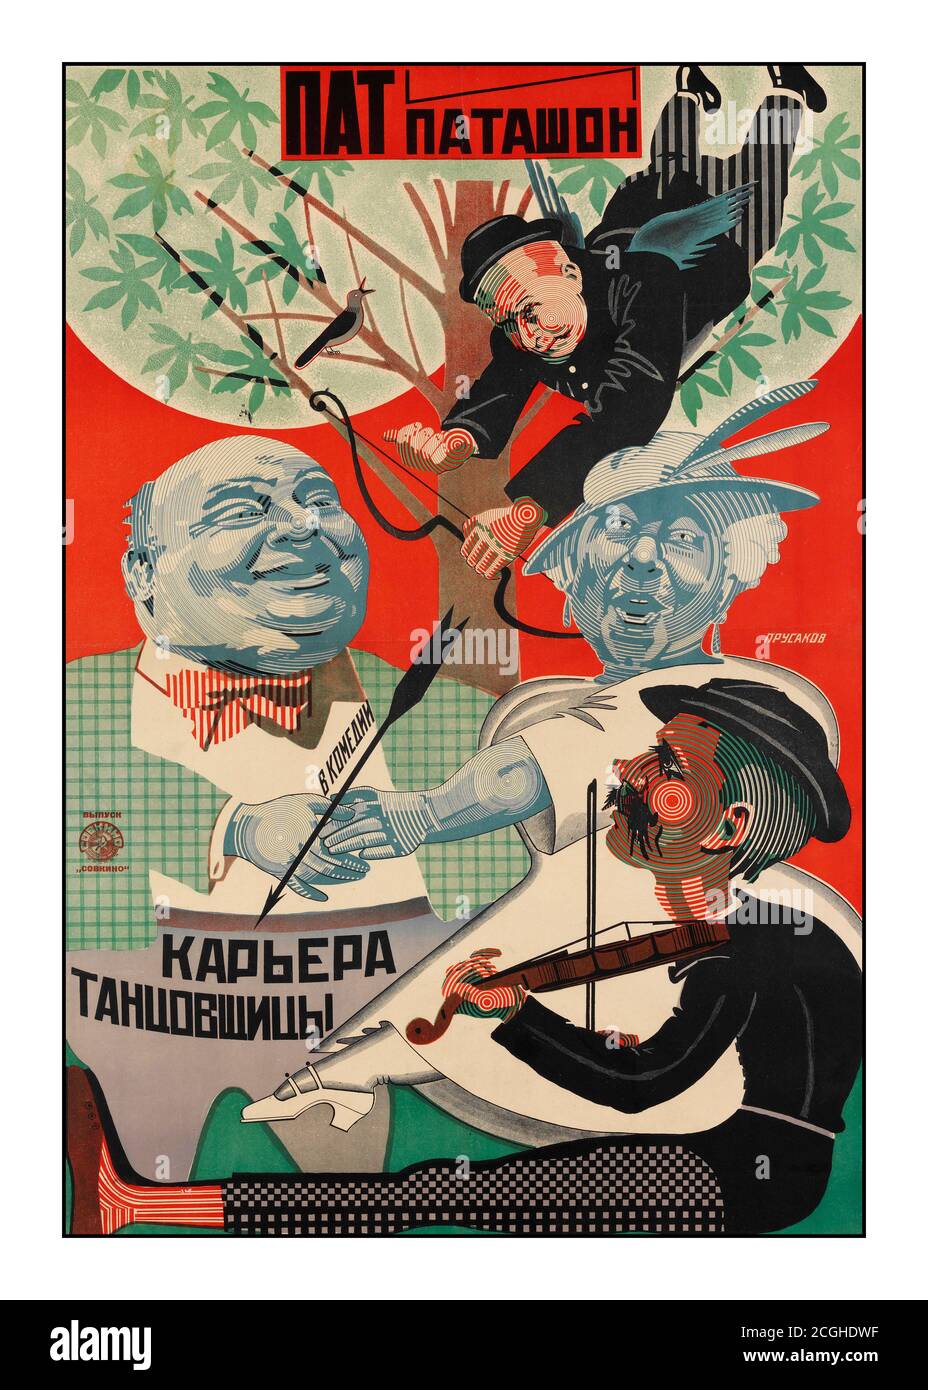 Jahrgang 1926 Sowjetisches Filmplakat ‘DIE KARRIERE EINES TÄNZERS’, NIKOLAI PRUSAKOV, Sowjetisches Stummfilmplakat SOWJETISCHES FILMPLAKAT FÜR DIE KARRIERE DES TÄNZERS VON NIKOLAI PRUSAKOV (RUSSISCH 1900-1952), 1926 NIKOLAI PRUSAKOV (RUSSISCH 1900-1952), The Dancer's Career (Moskau: Sovkino, 1926), gedruckt von GLAVLIT, Auflage 10,000, Lithographie, Featuring und Patachon. Stockfoto